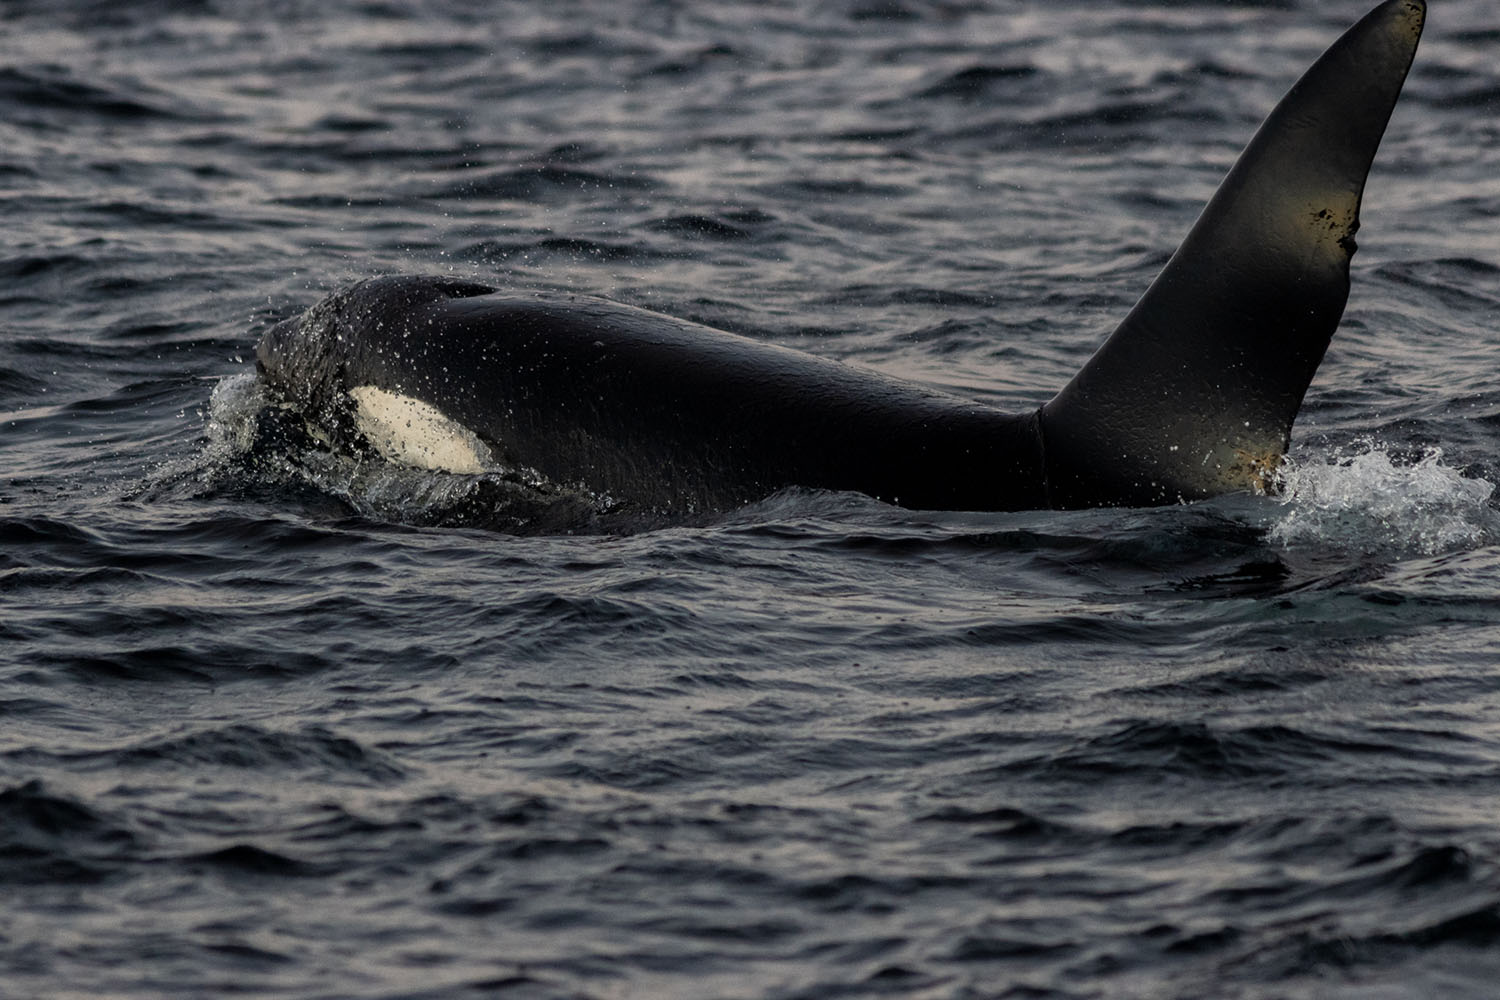 voyage scientifique - orques et baleines a bosse de norvege 17